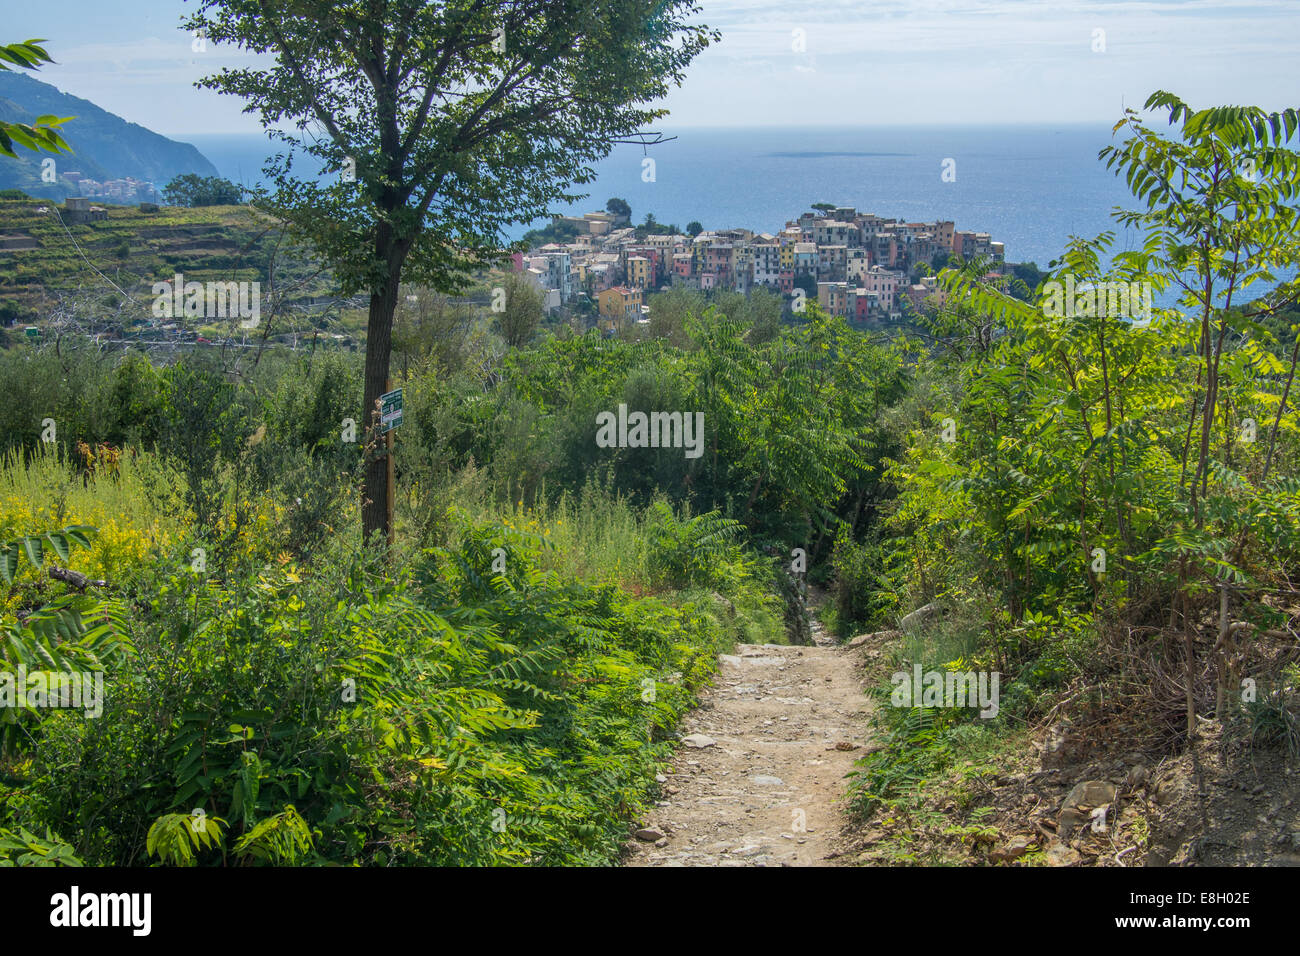 Approche de la falaise ville de Corniglia sur le chemin côtier de Vernazza, Cinque Terre, région de Ligurie, Italie. Banque D'Images